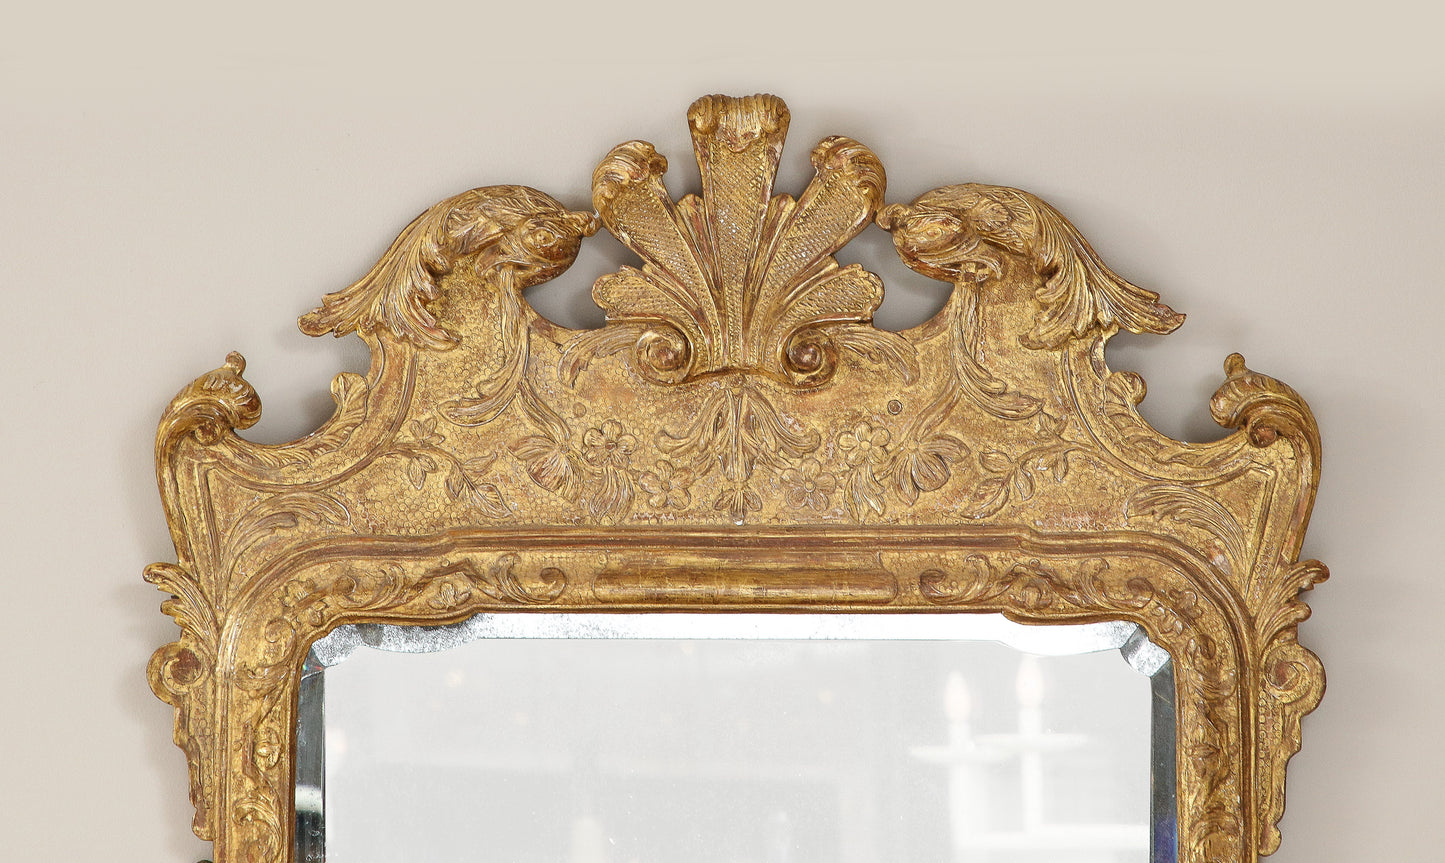 George II carved gesso mirror